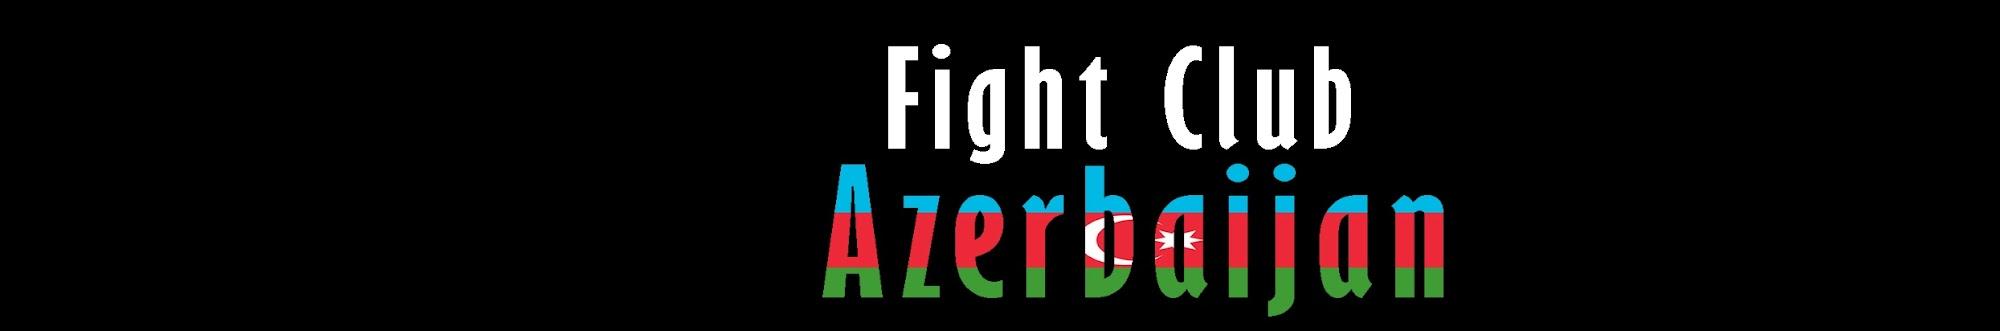 Fight Club Azerbaijan